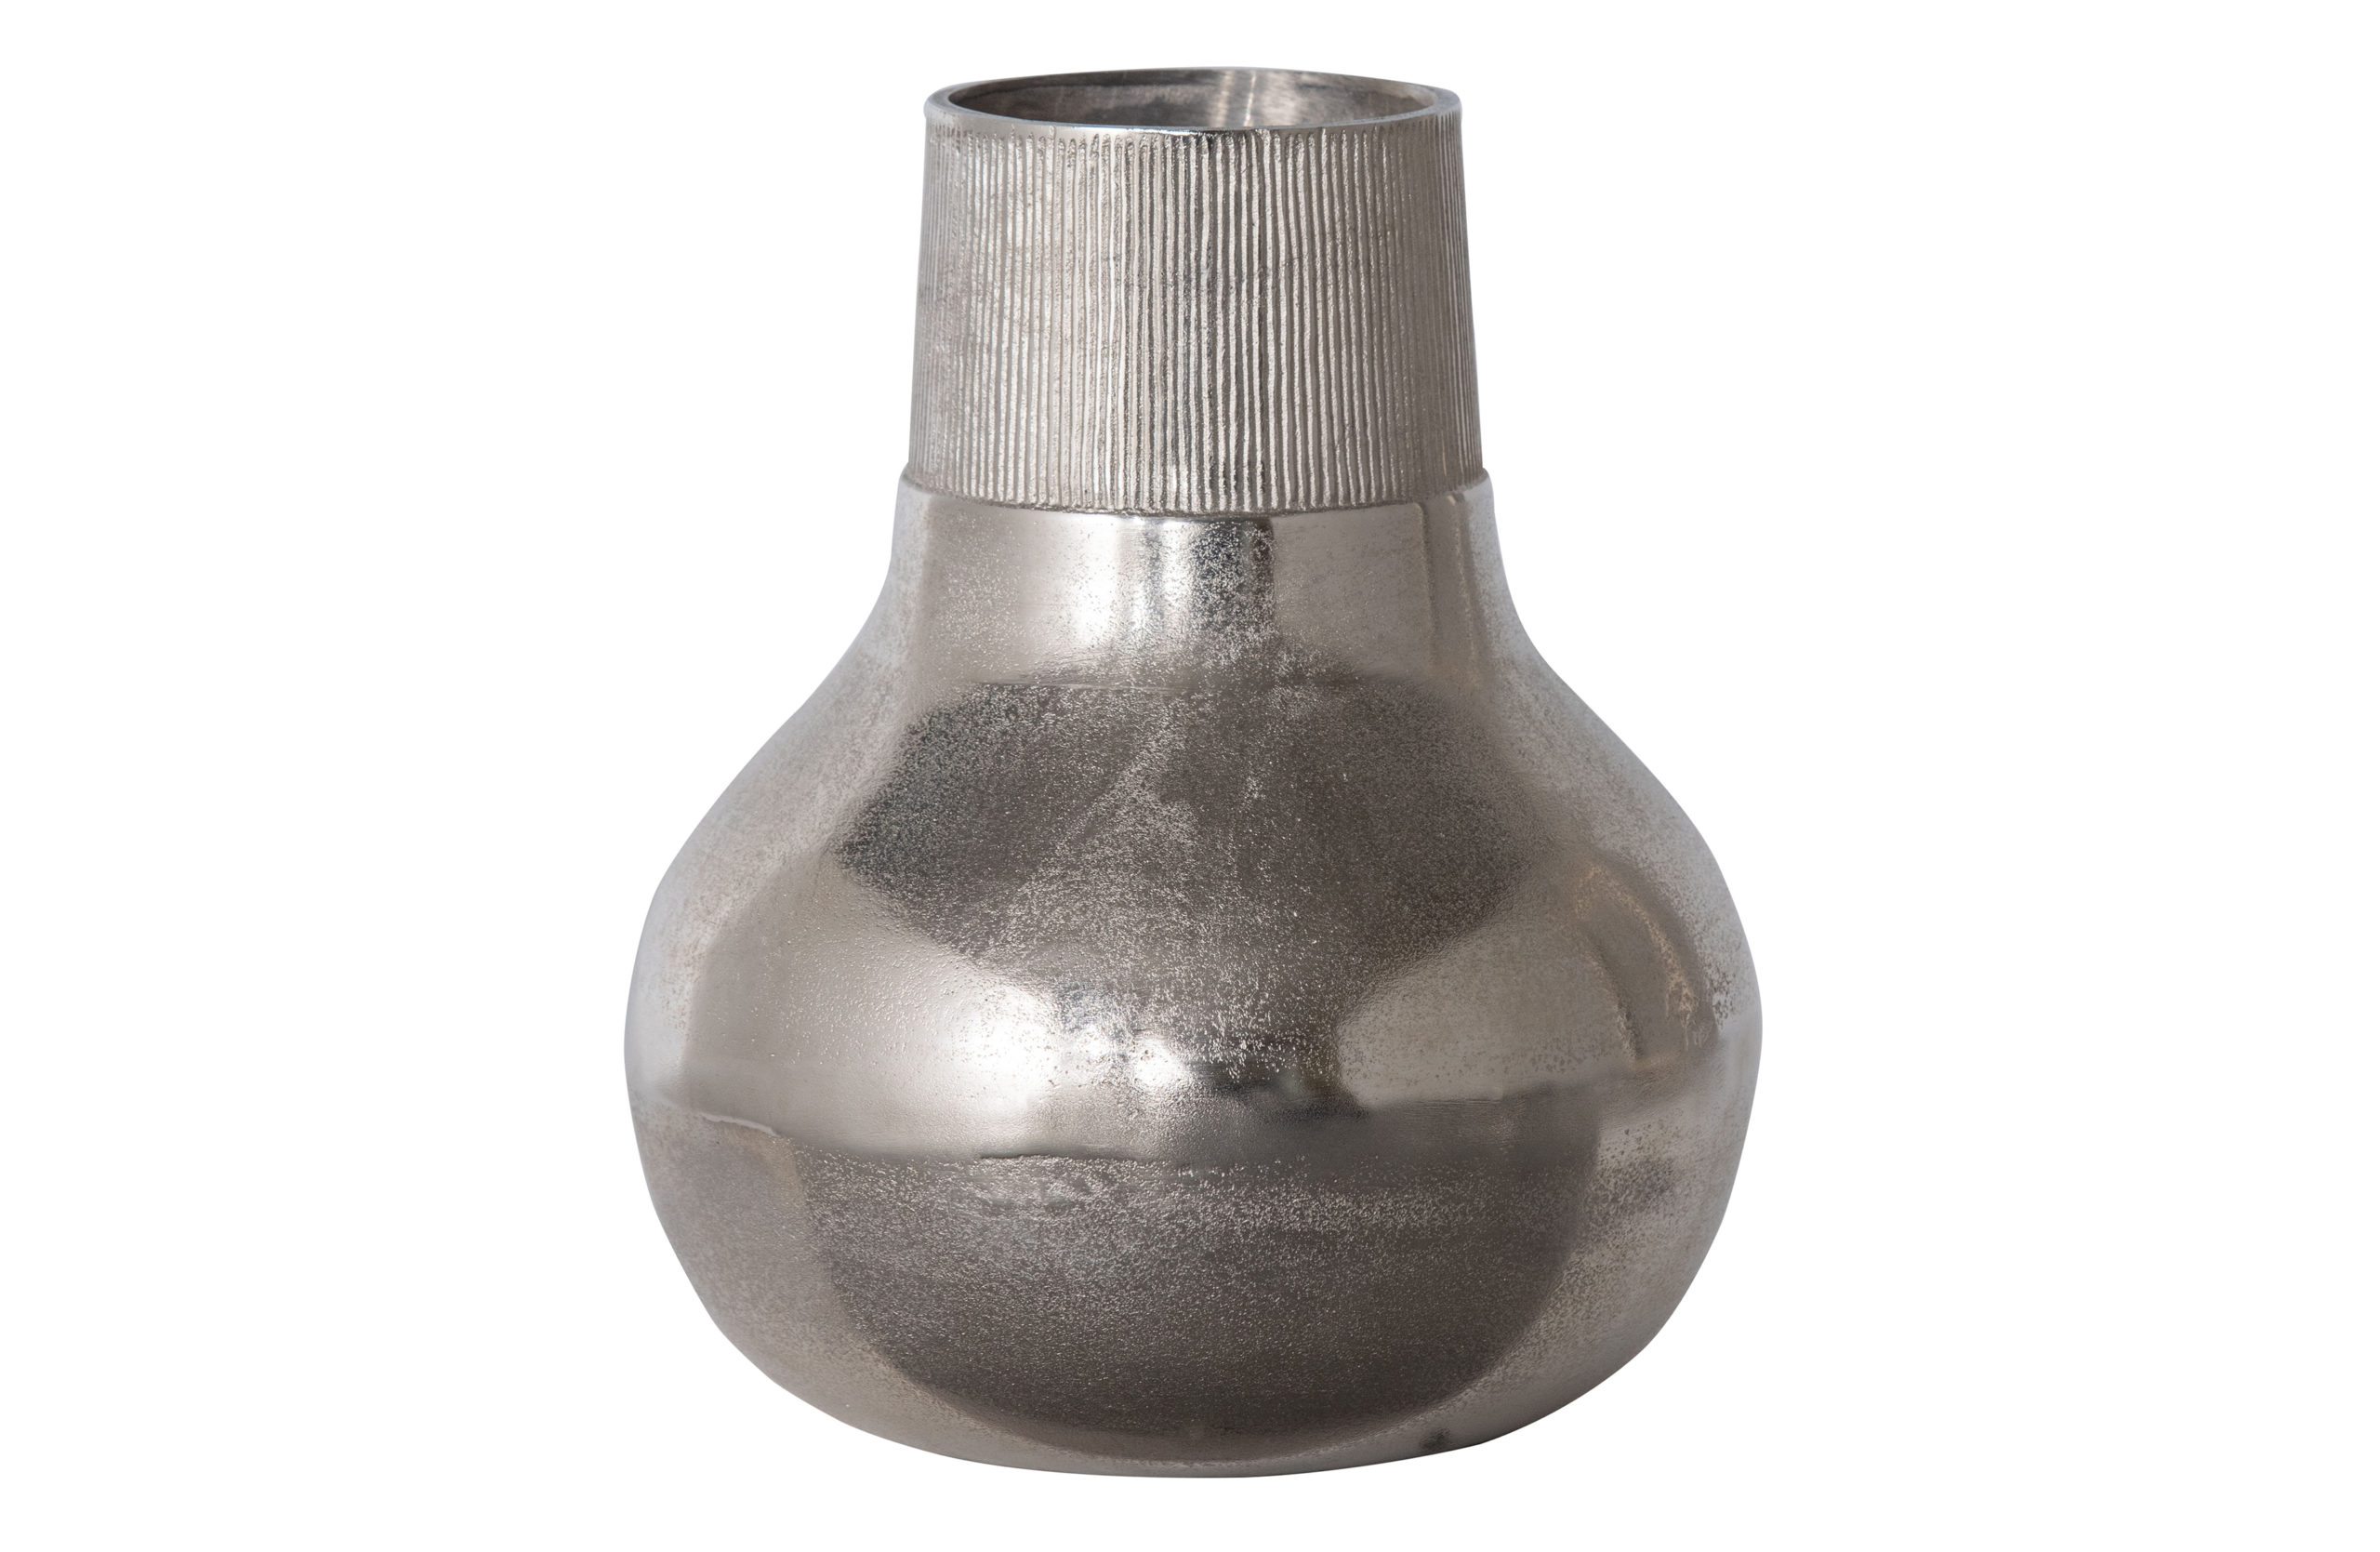 BePureHome Metal Vaas L - Metaal - Zilver - 36x30x30